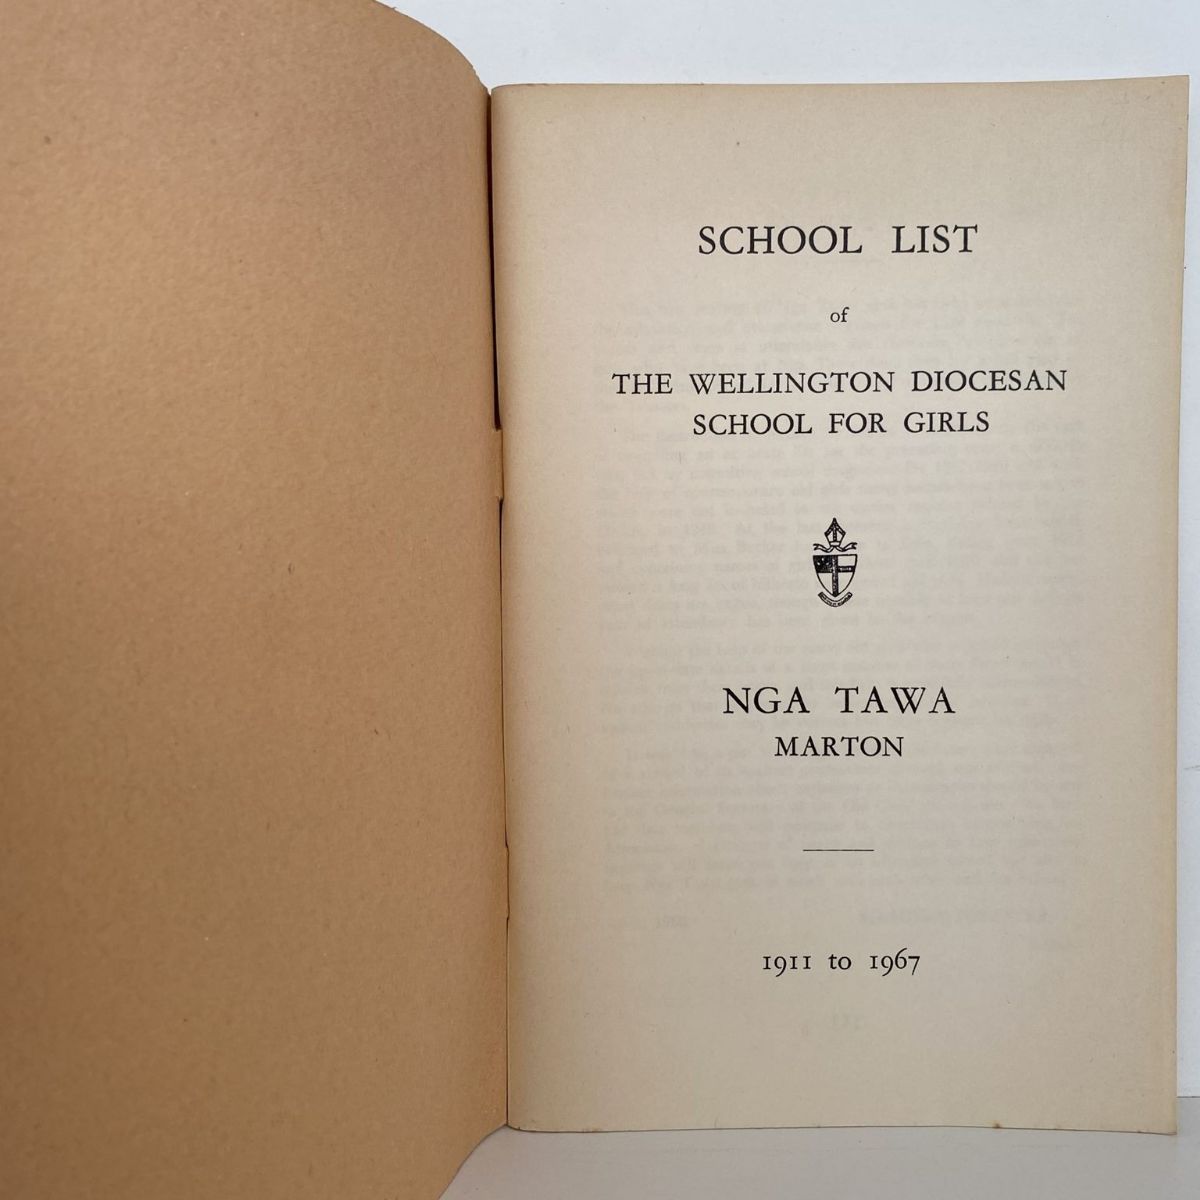 NGA TAWA: The Wellington Diocesan School for Girls 1911 - 1967